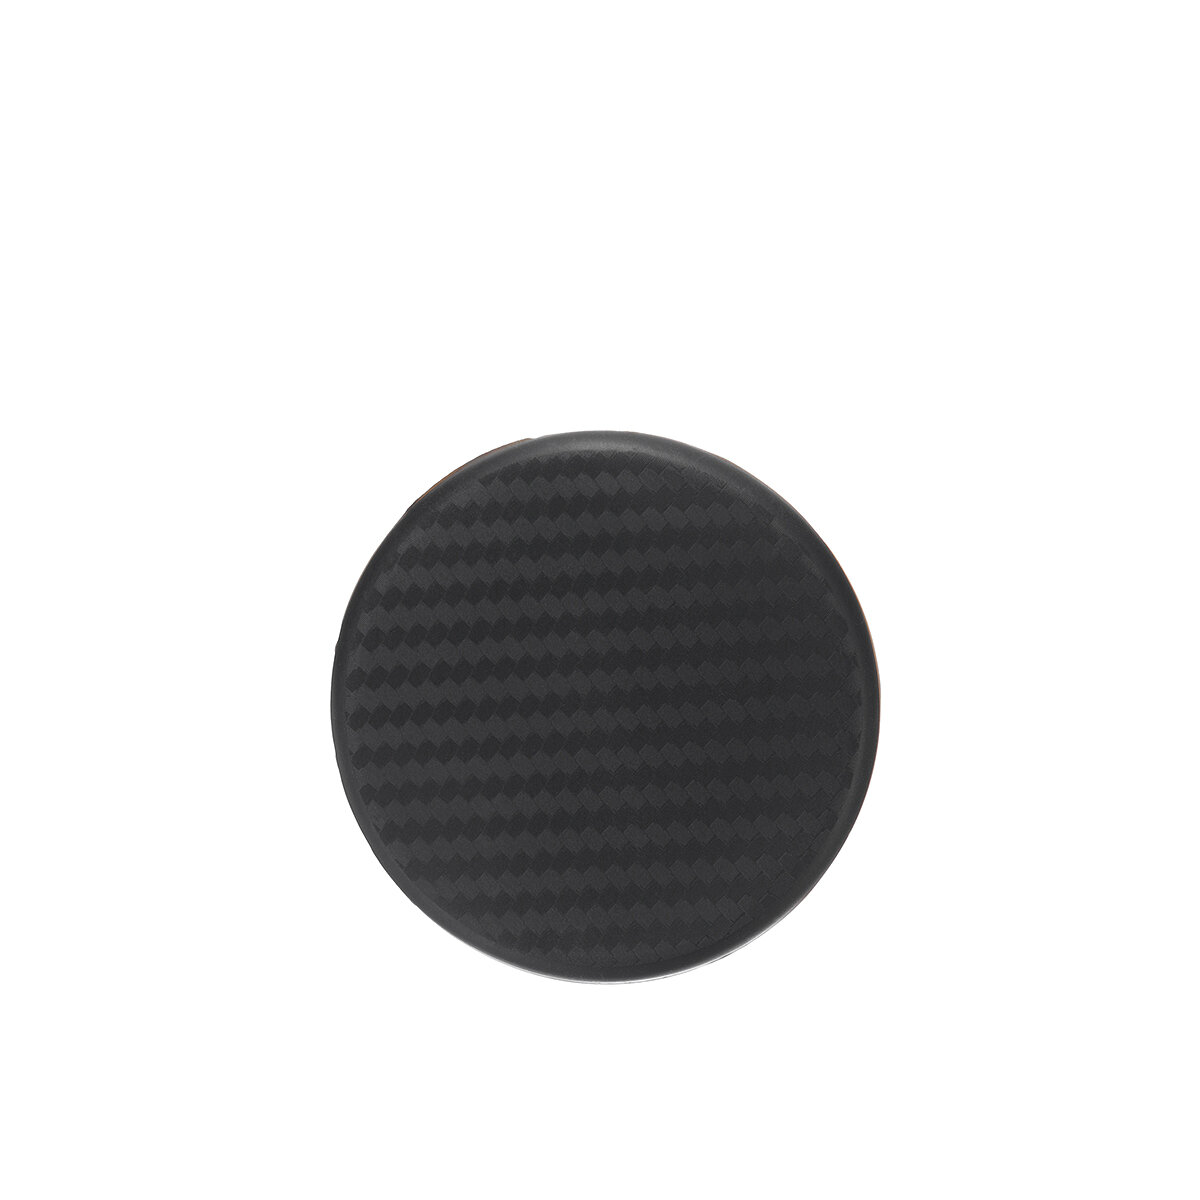 2Pcs Car Auto Water Cup Slot Non-Slip Carbon Fiber Look Mat Accessories Black